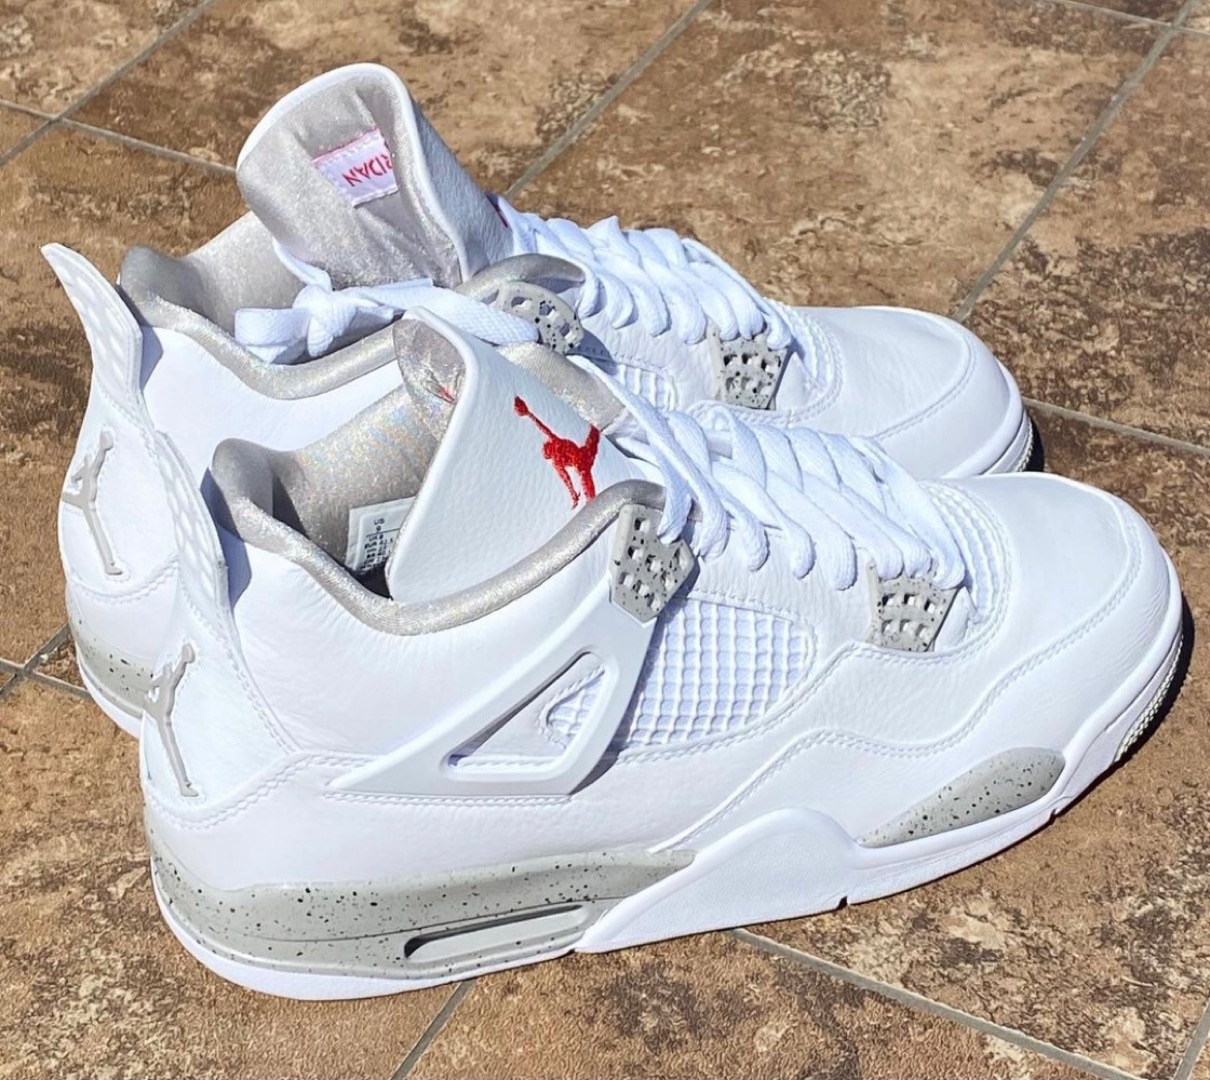 Nike】Air Jordan 4 Retro “White Oreo”が国内7月28日に発売予定 | UP 